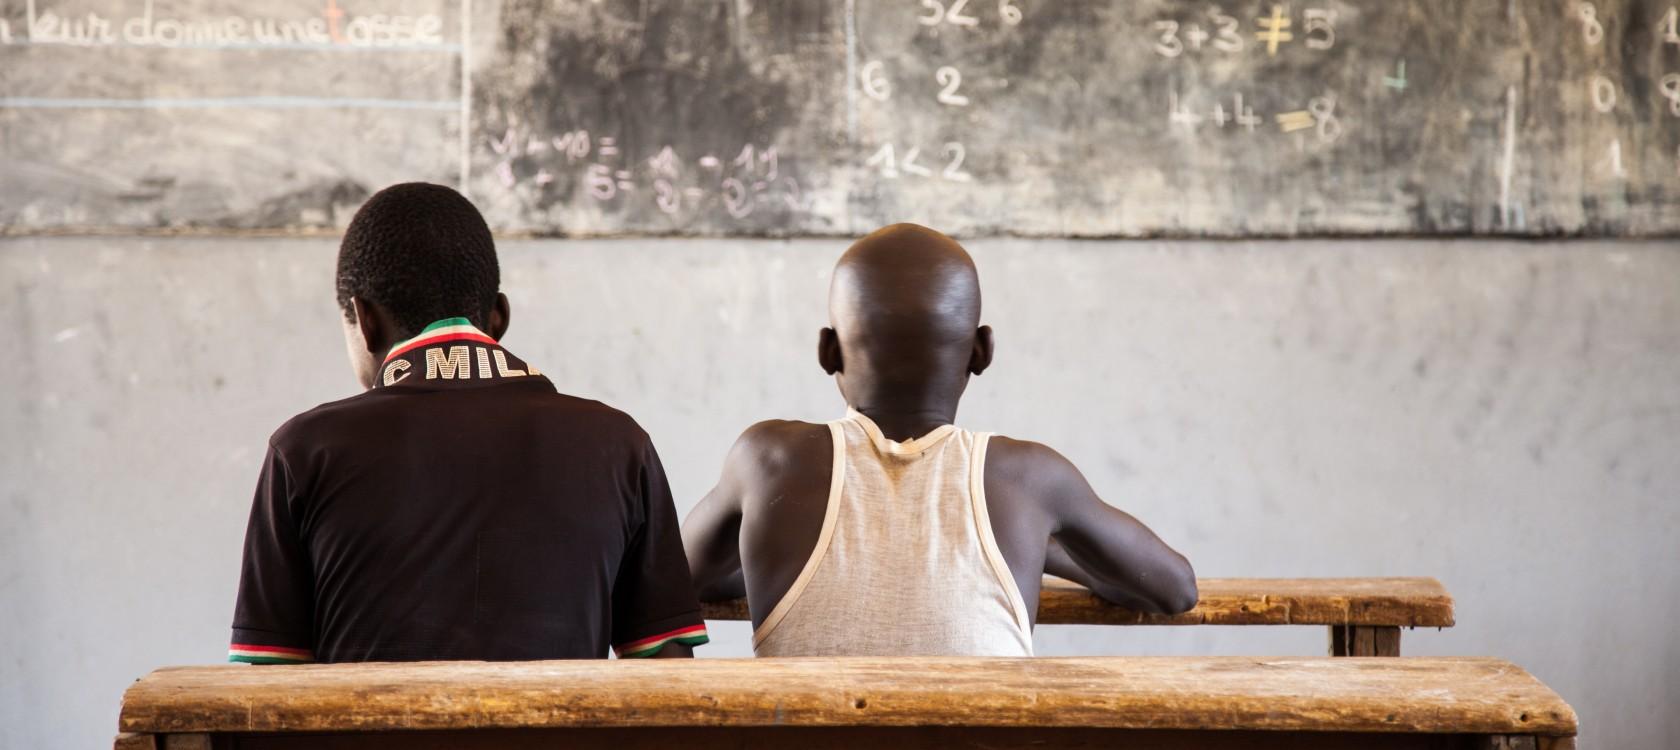 En Guinée et au Niger, 100 millions d’euros pour améliorer l’éducation | AFD – Agence Française de Développement